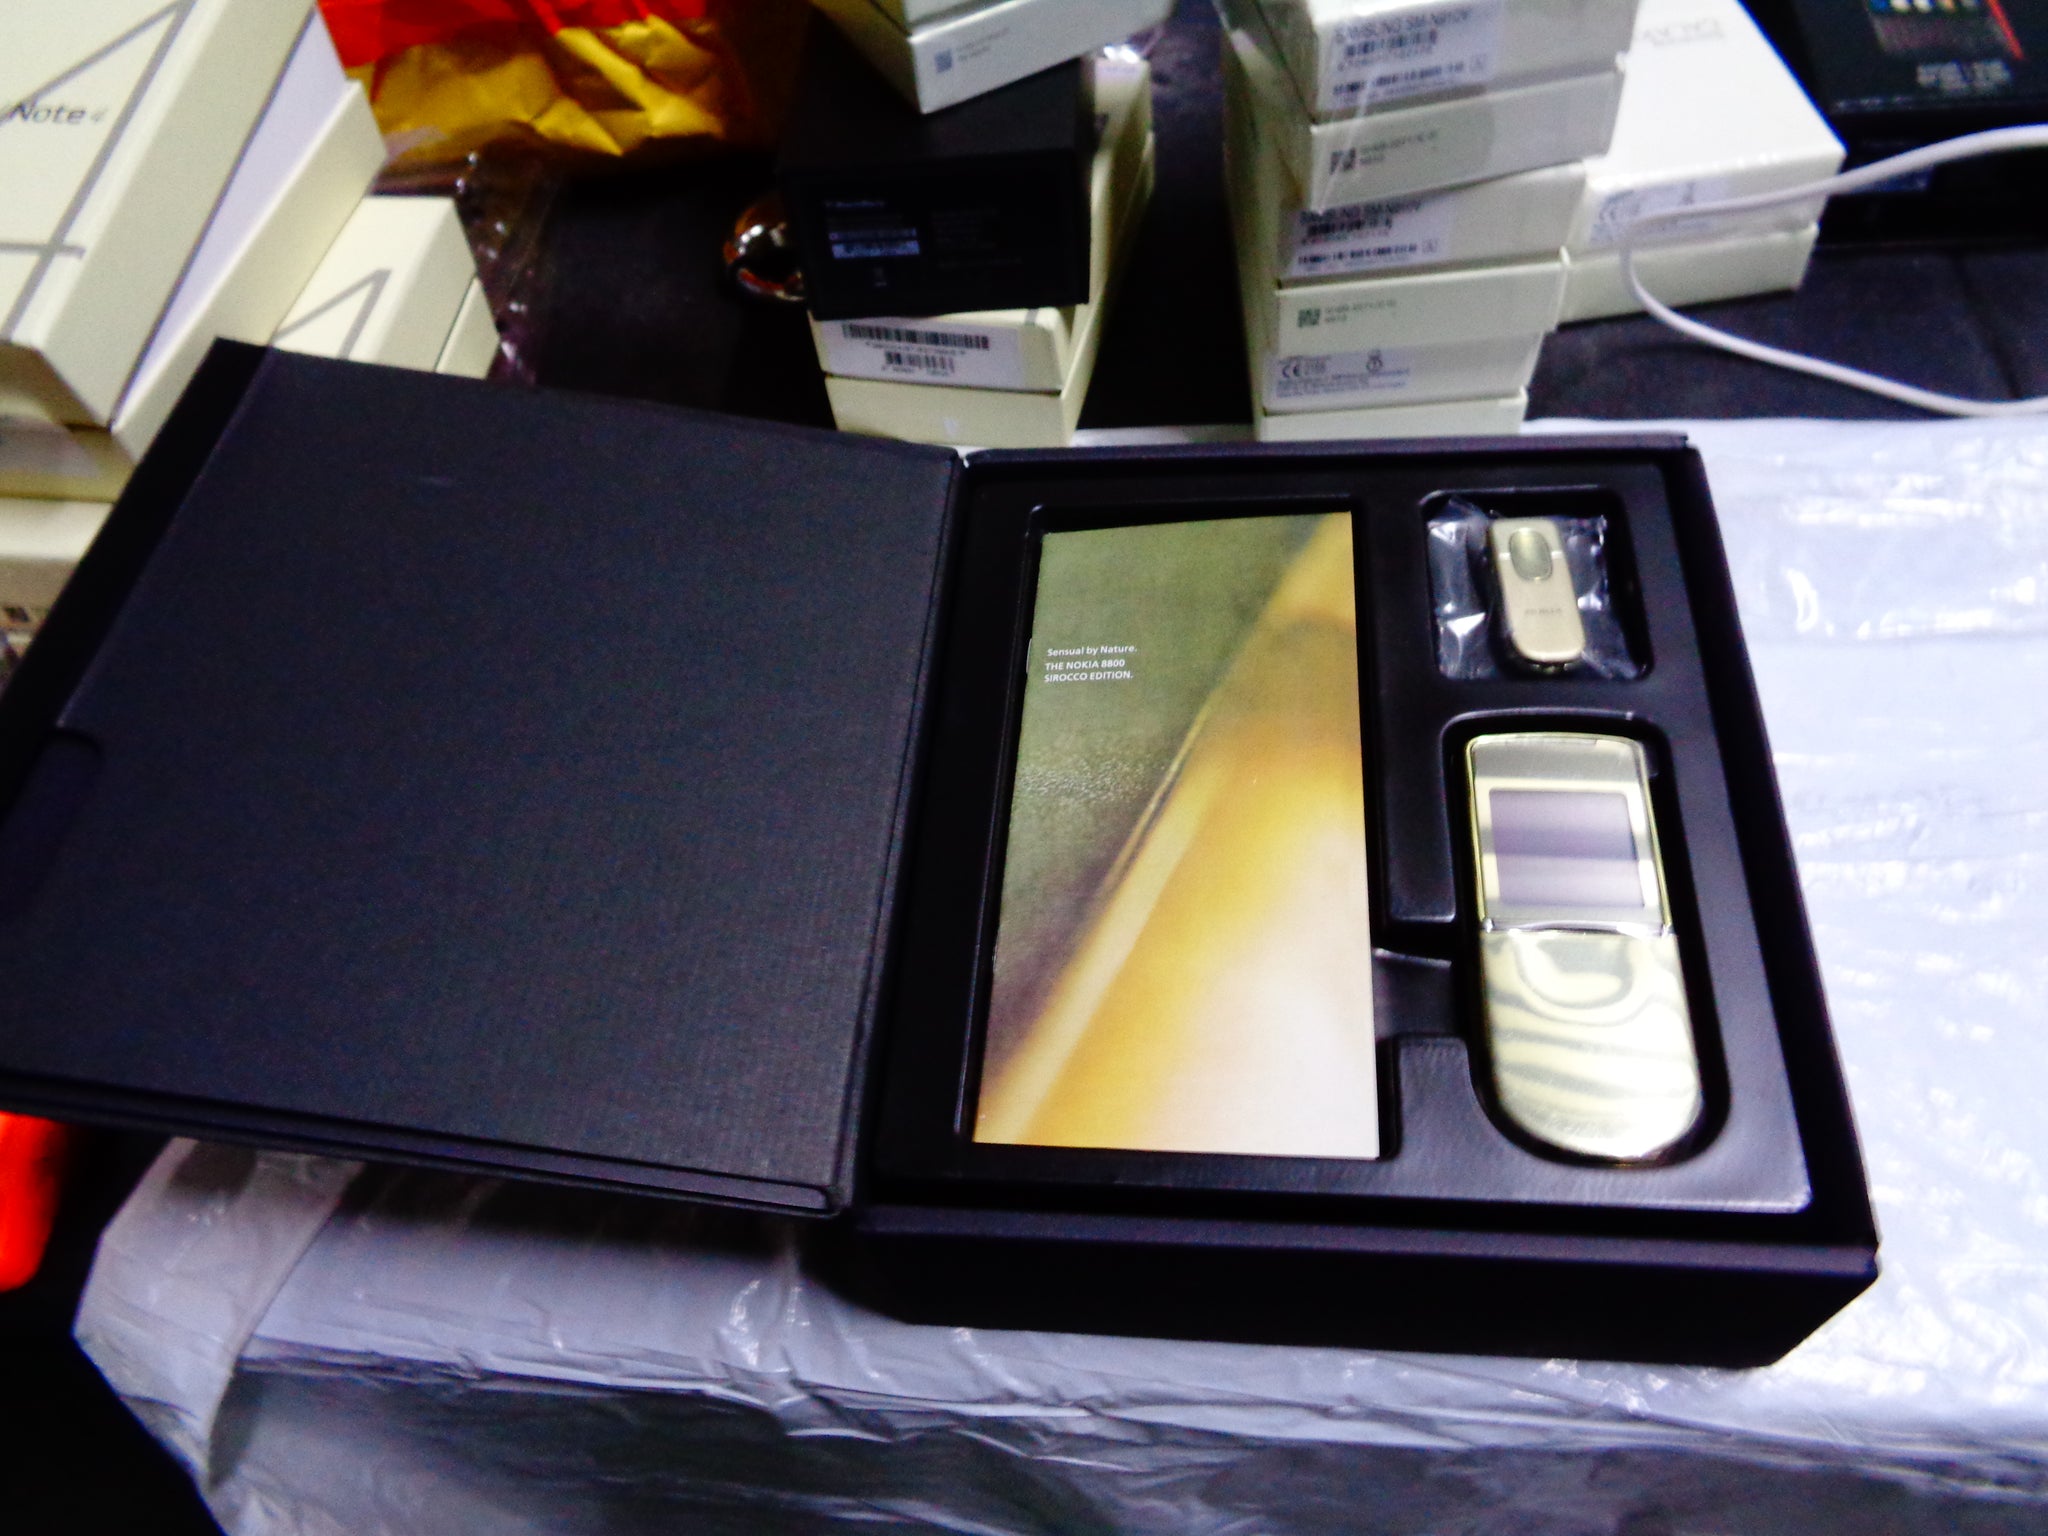 Nokia 8800 Sirocco Gold - đồ điện tử (electronic gadgets): Nokia 8800 Sirocco Gold là một trong những đồ điện tử đẳng cấp và thu hút nhất hiện nay. Với vỏ và chi tiết mạ vàng sang trọng, điện thoại này là biểu tượng của sự thượng lưu và đẳng cấp. Nếu bạn yêu thích những đồ điện tử độc đáo, Nokia 8800 Sirocco Gold đáng được sở hữu.